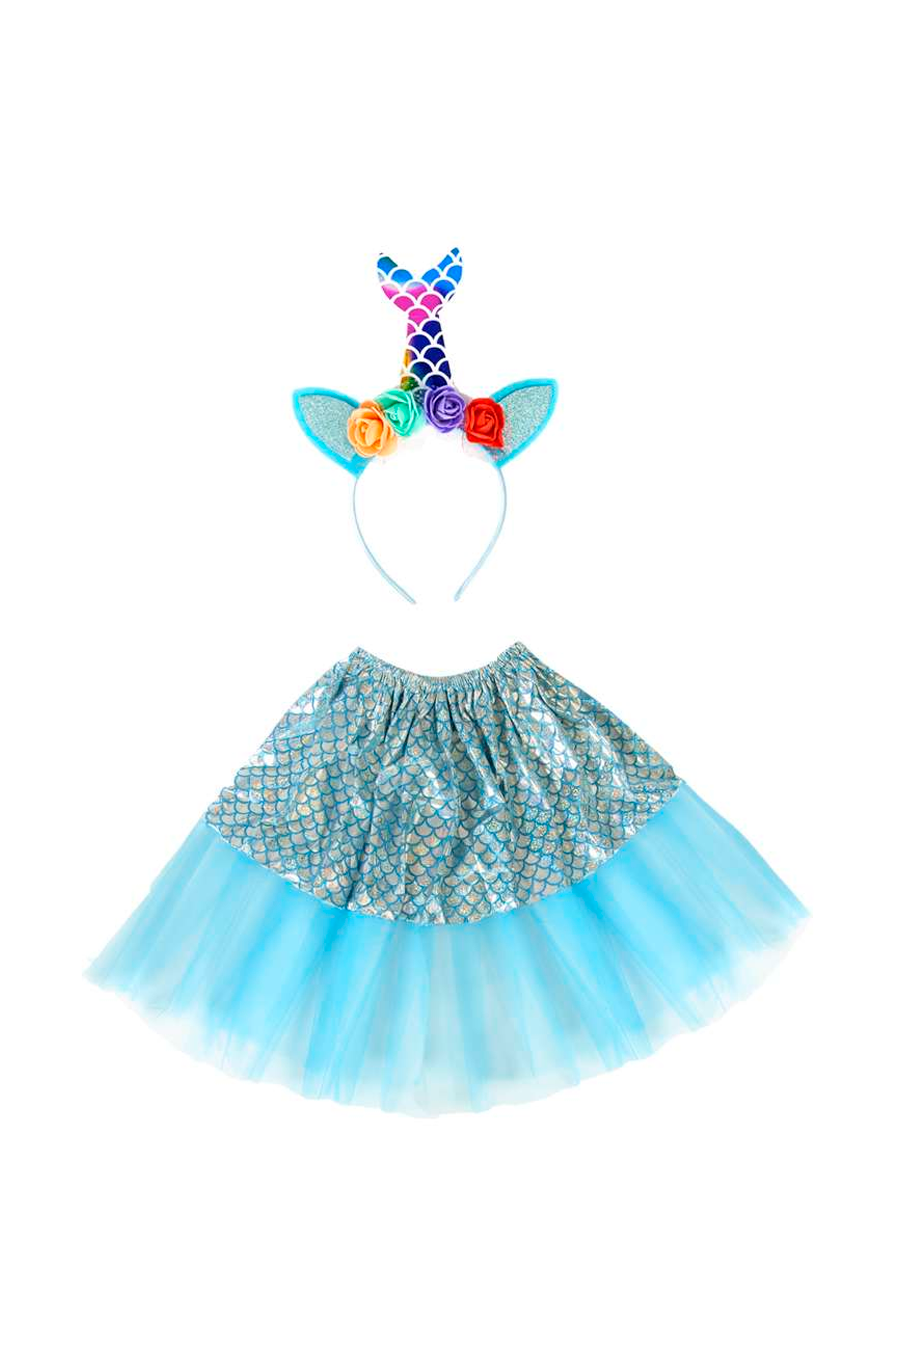 Fantasia de Sereia Infantil Azul Com Cauda Carnaval